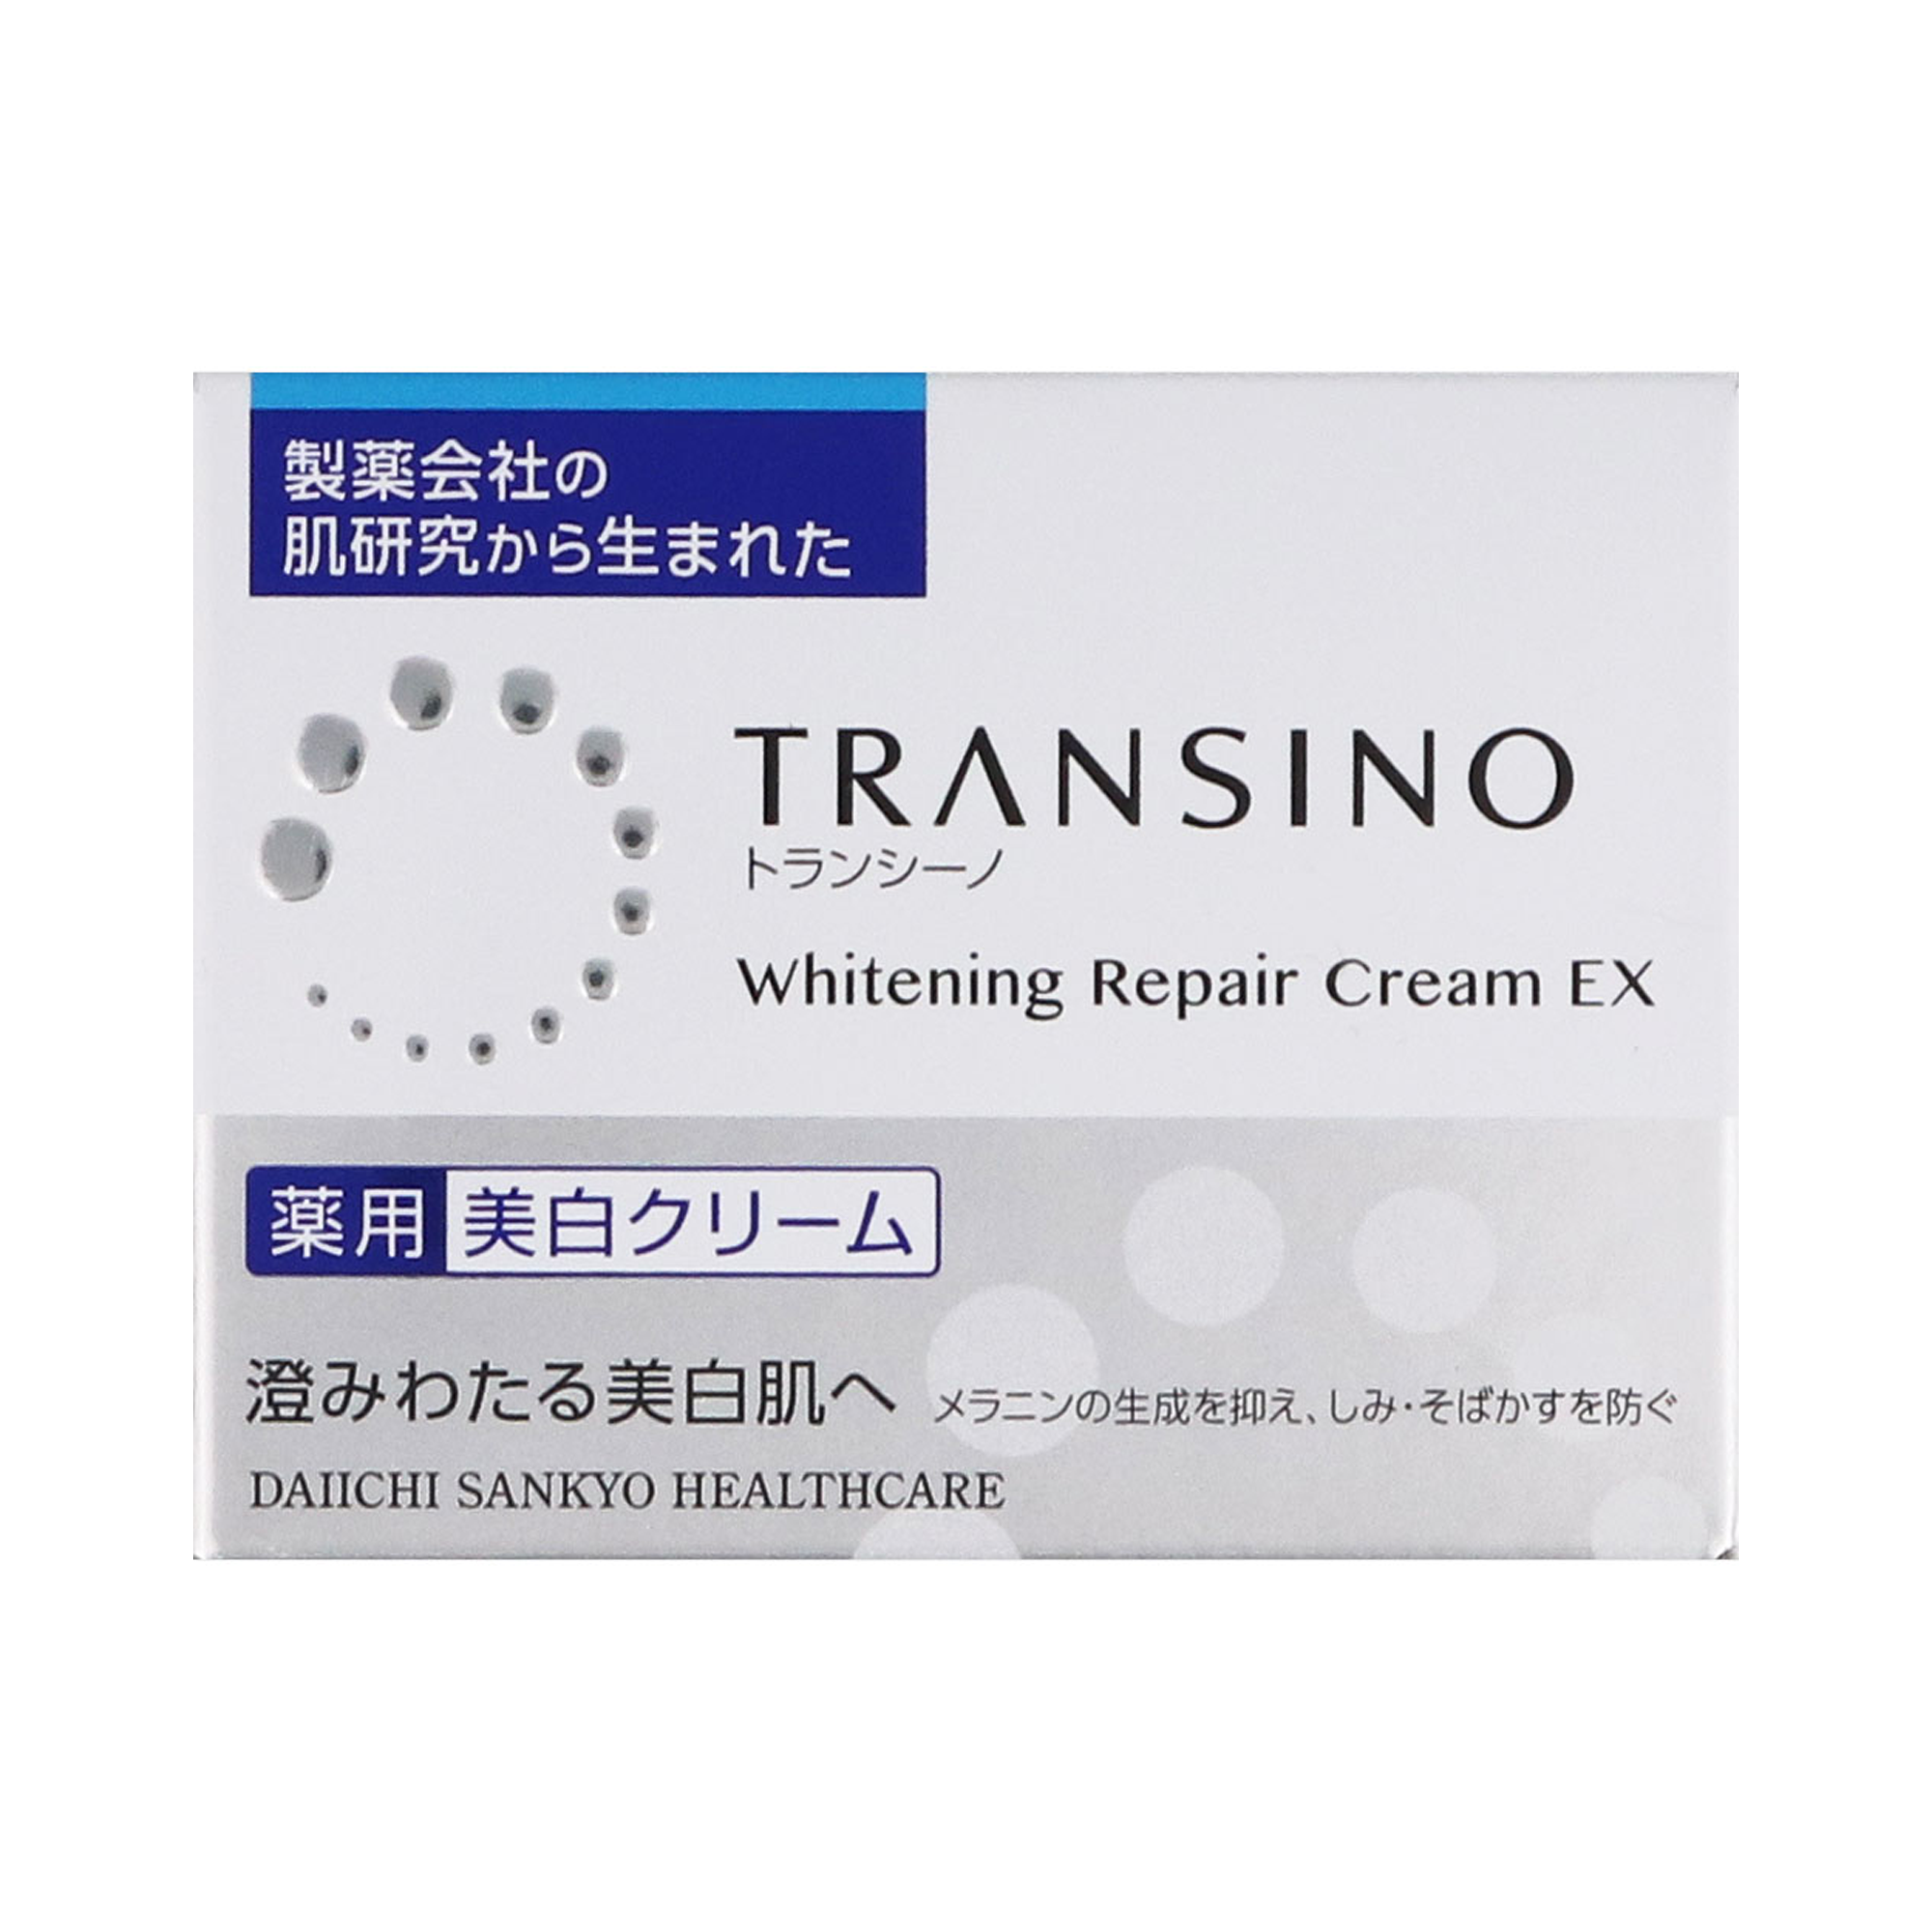 TRANSINO药用美白护理乳霜 35g